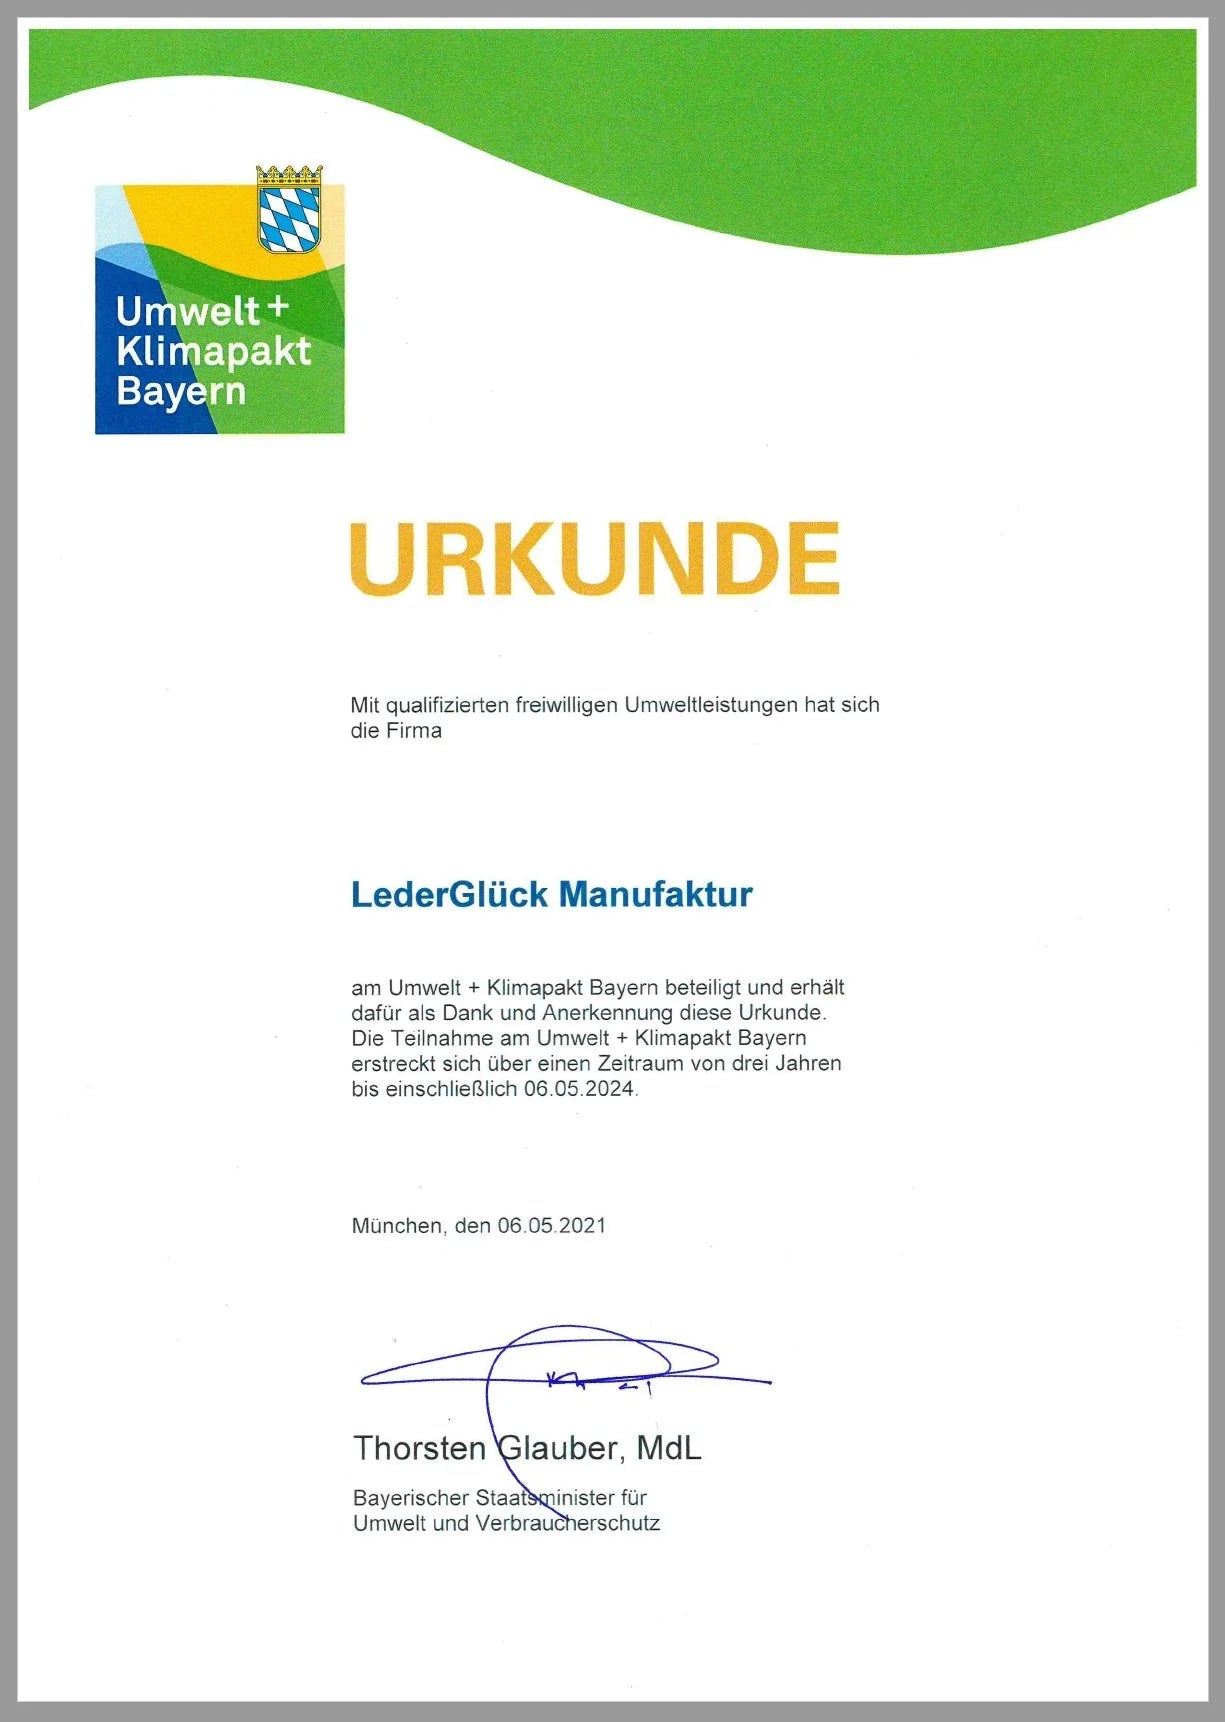 LederGlück Manufaktur ist Teilnehmer am Umwelt- und Klimapakt Bayern